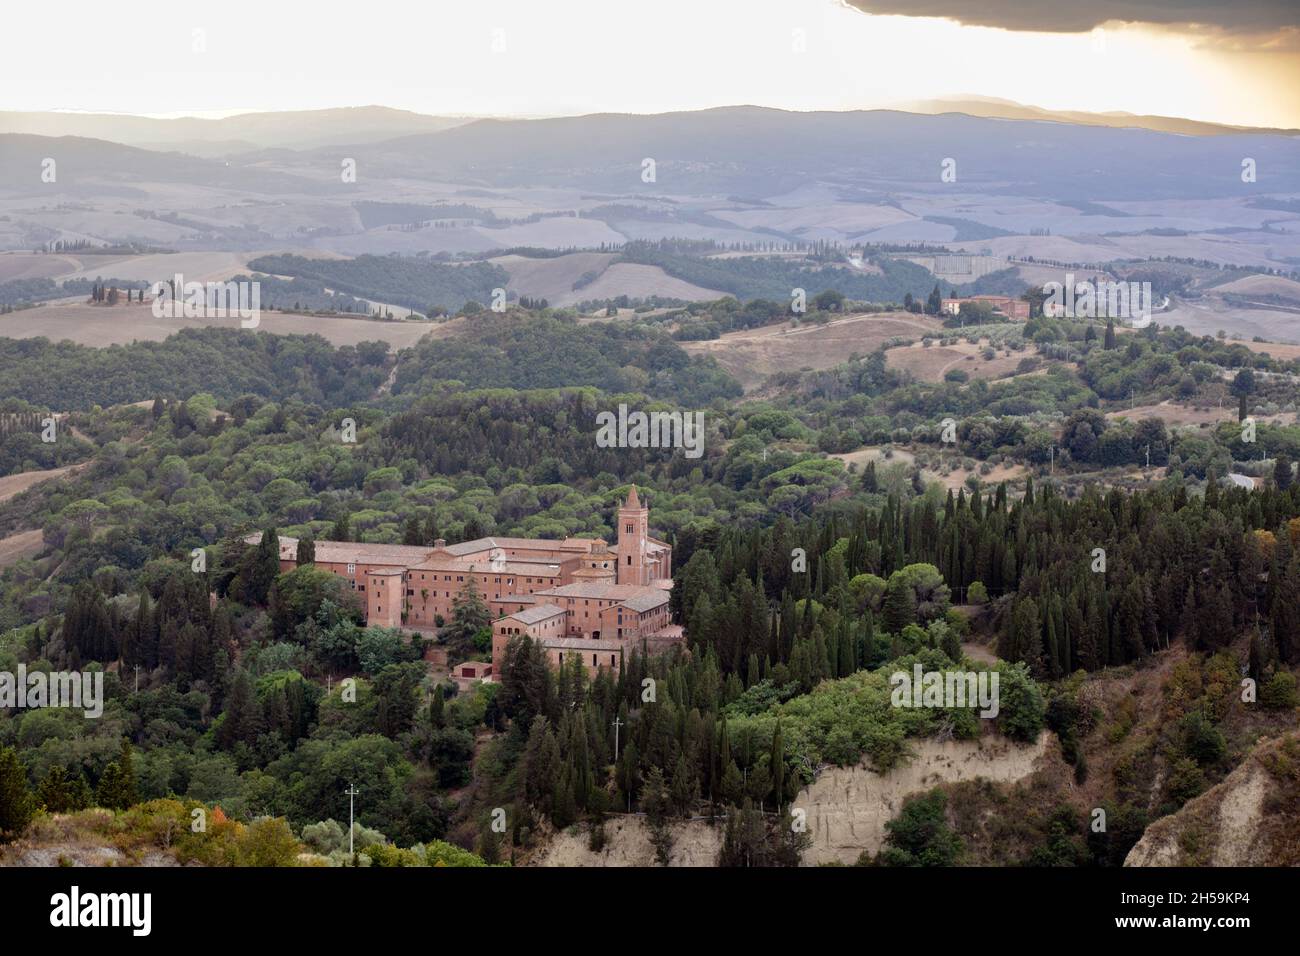 Vista del paisaje desde el pueblo de Chiusure y la abadía de Monteoliveto Maggiore, Asciano, Toscana, Italia Foto de stock